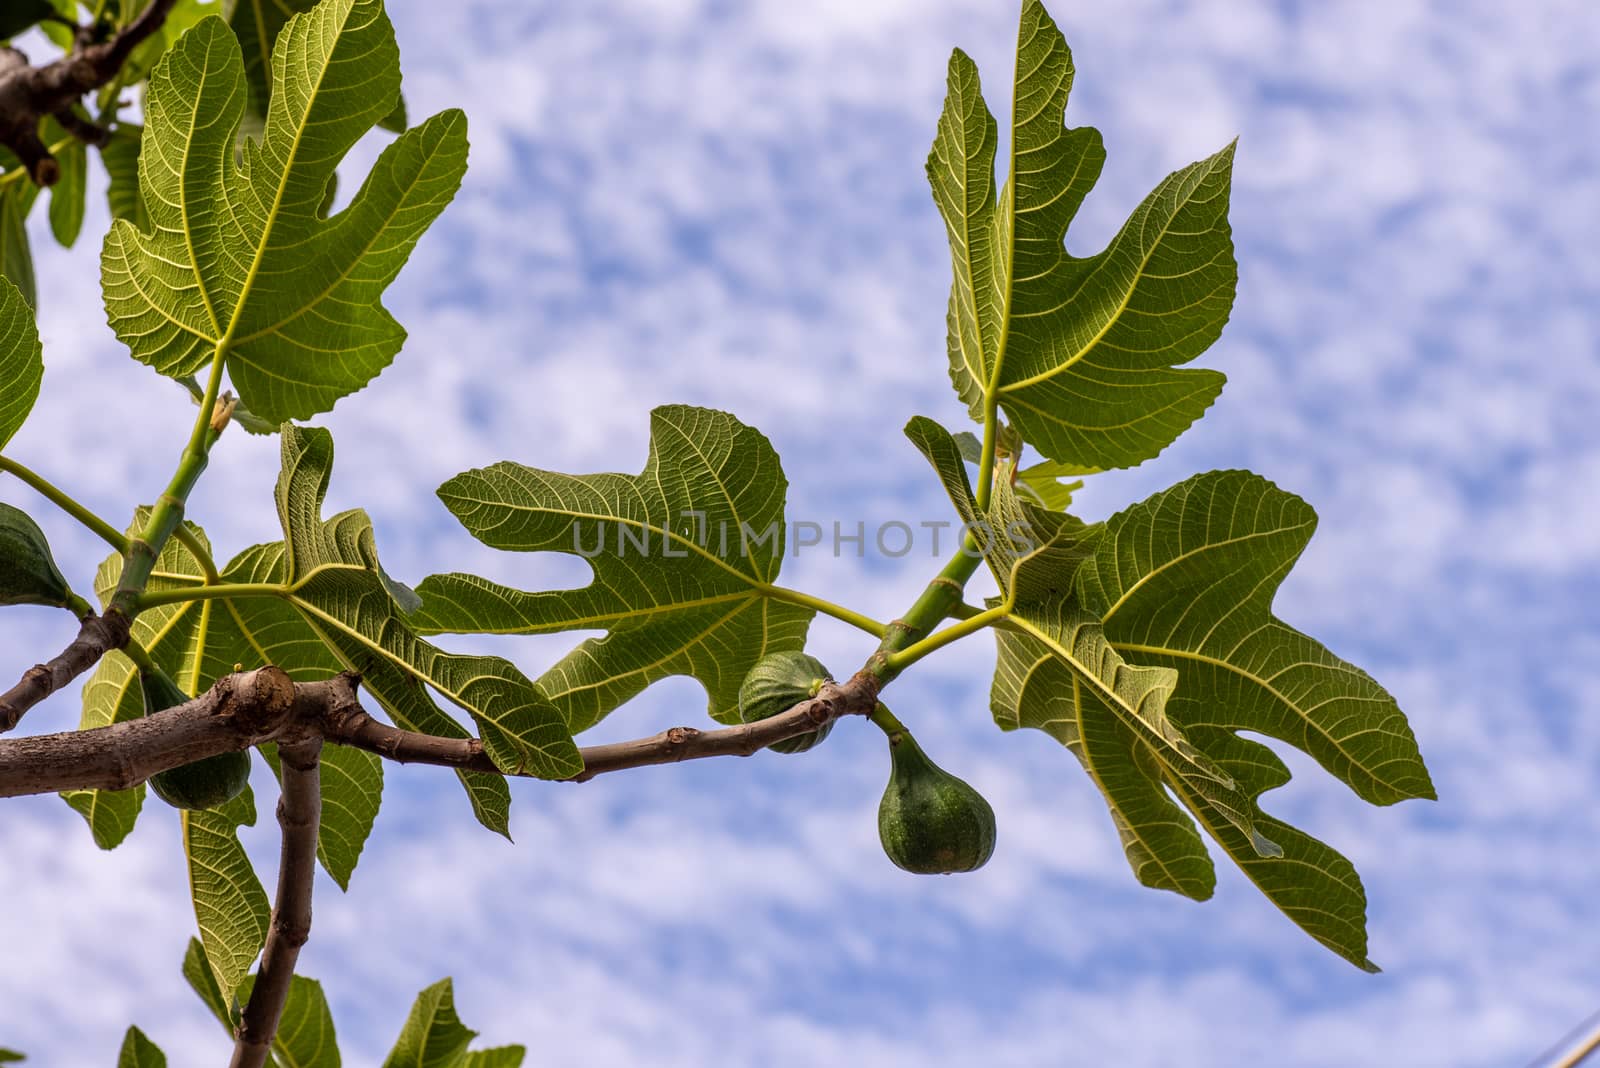 fig plant by carfedeph